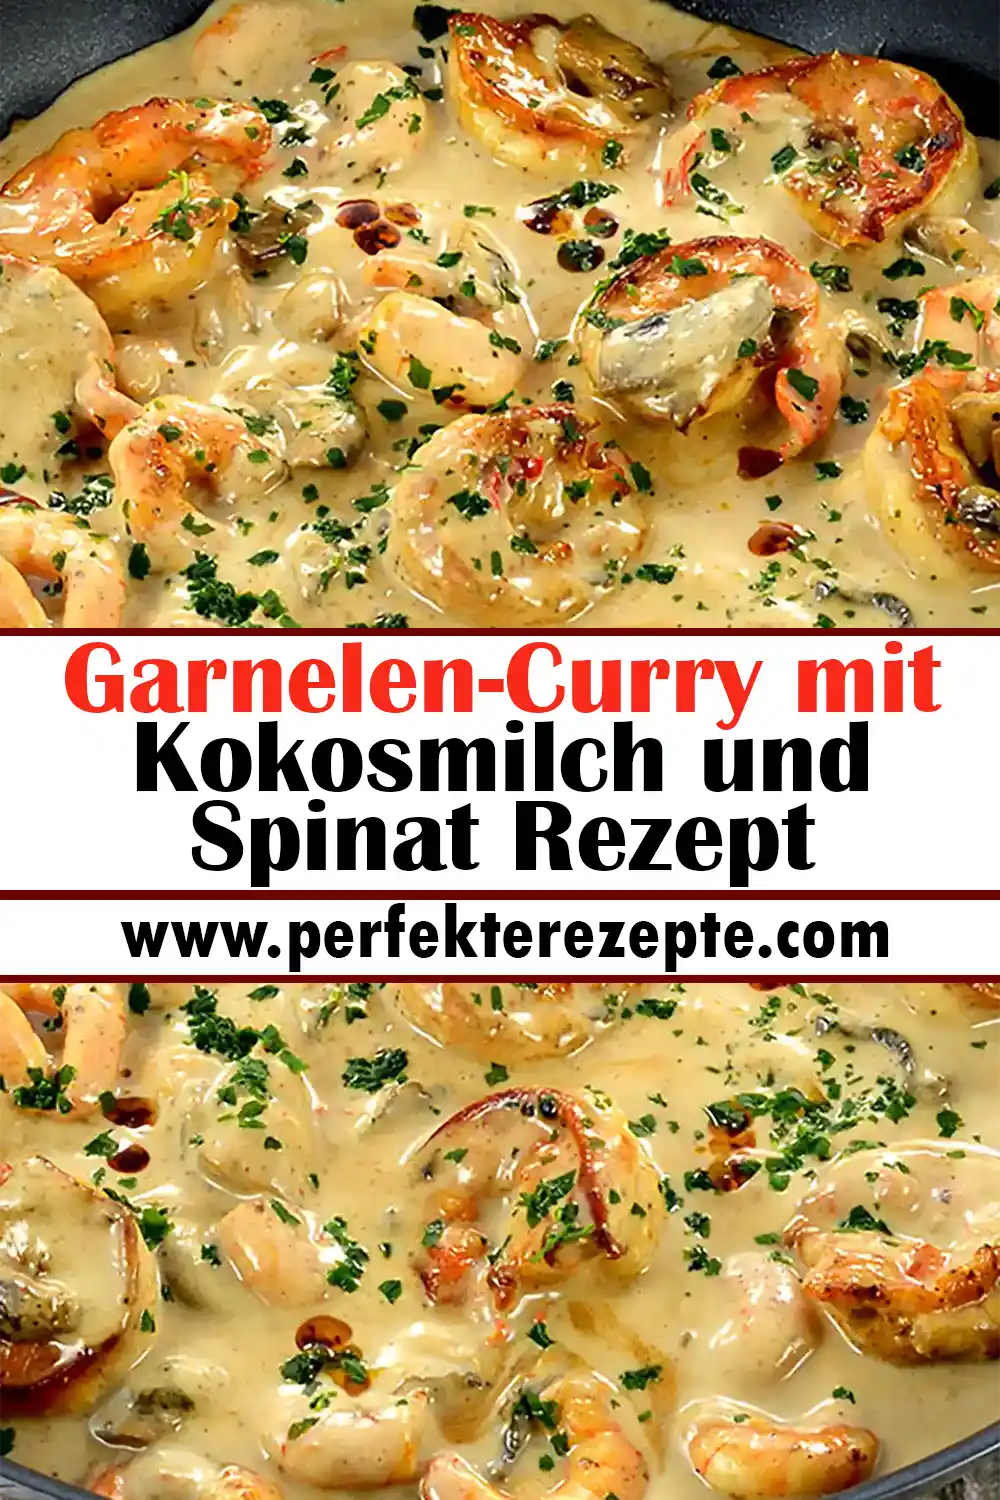 Garnelen-Curry mit Kokosmilch und Spinat Rezept